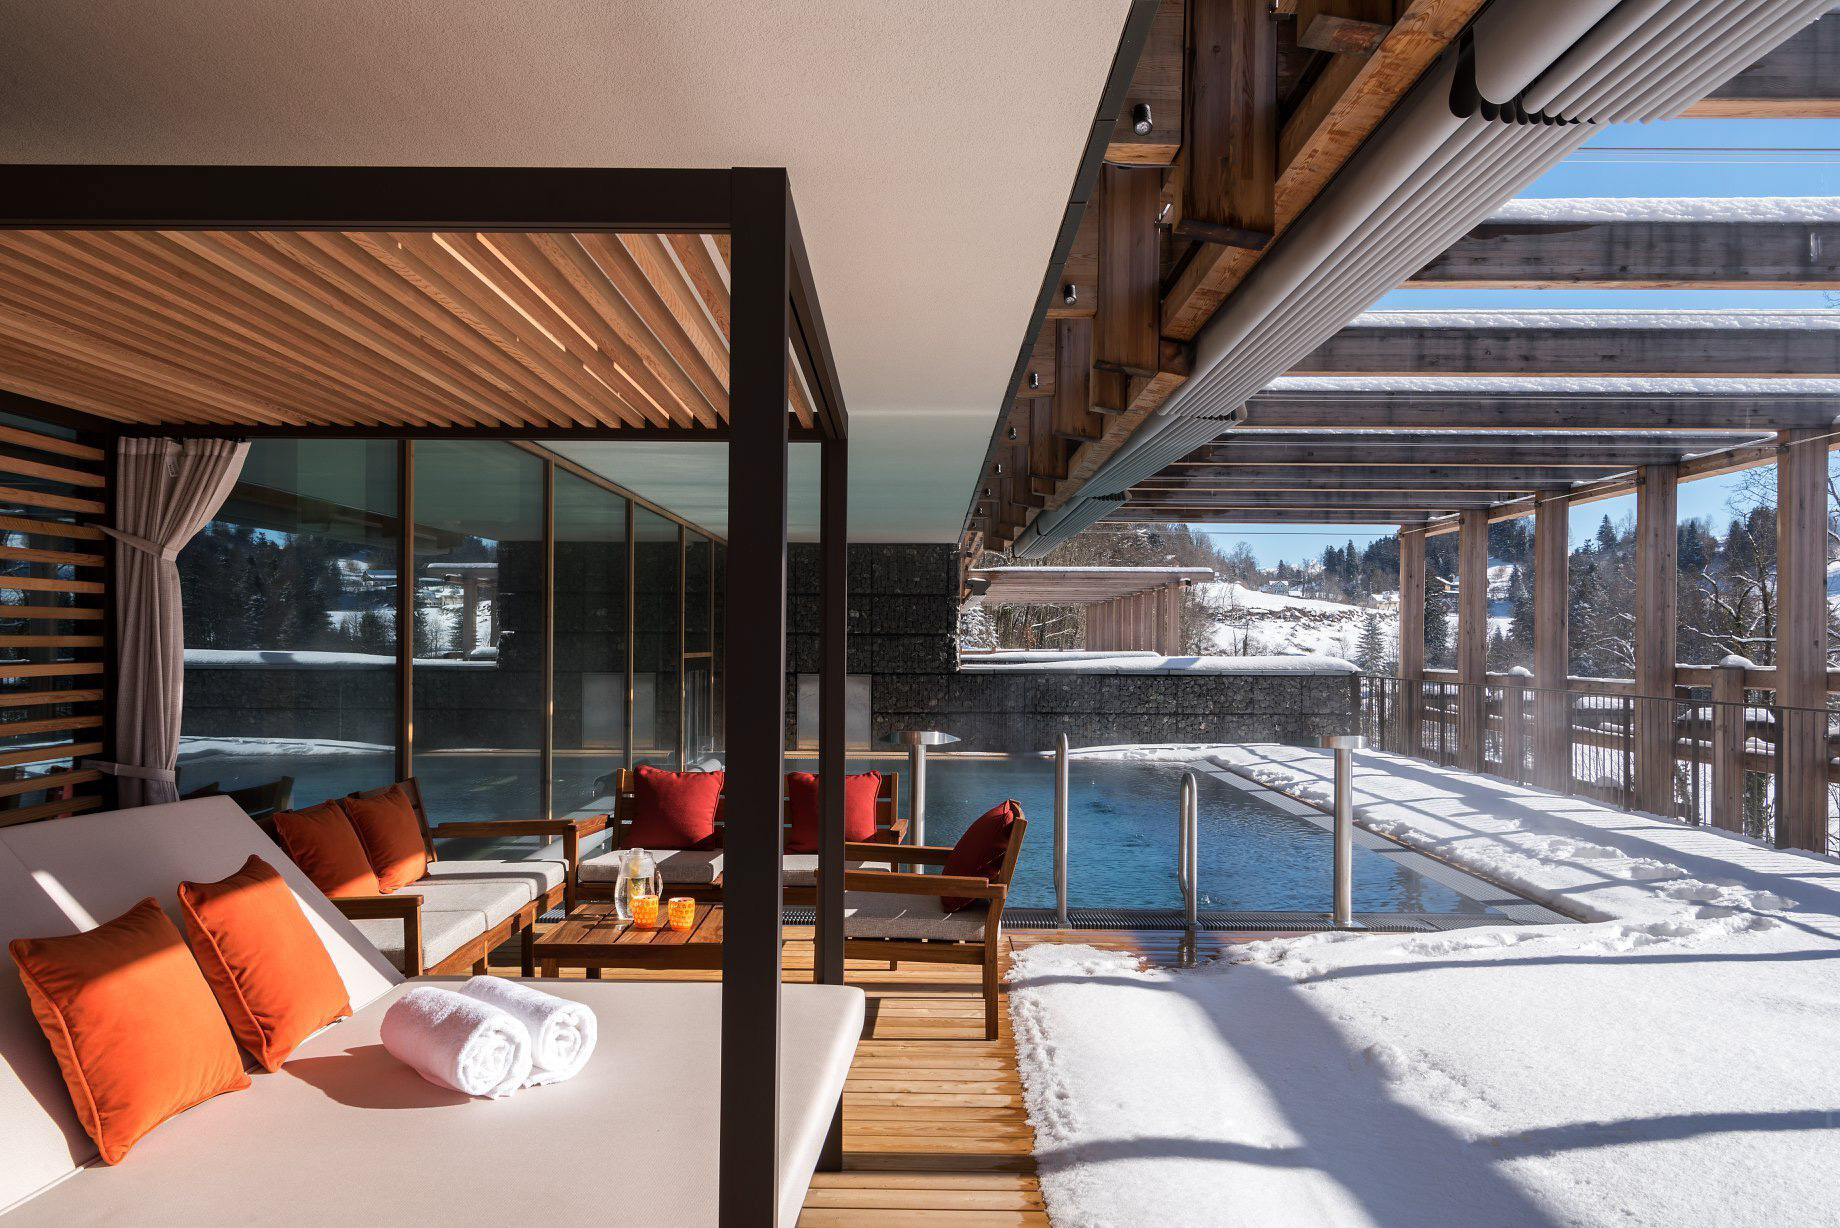 Waldhotel – Burgenstock Hotels & Resort – Obburgen, Switzerland – Outdoor Pool Deck Winter Snow